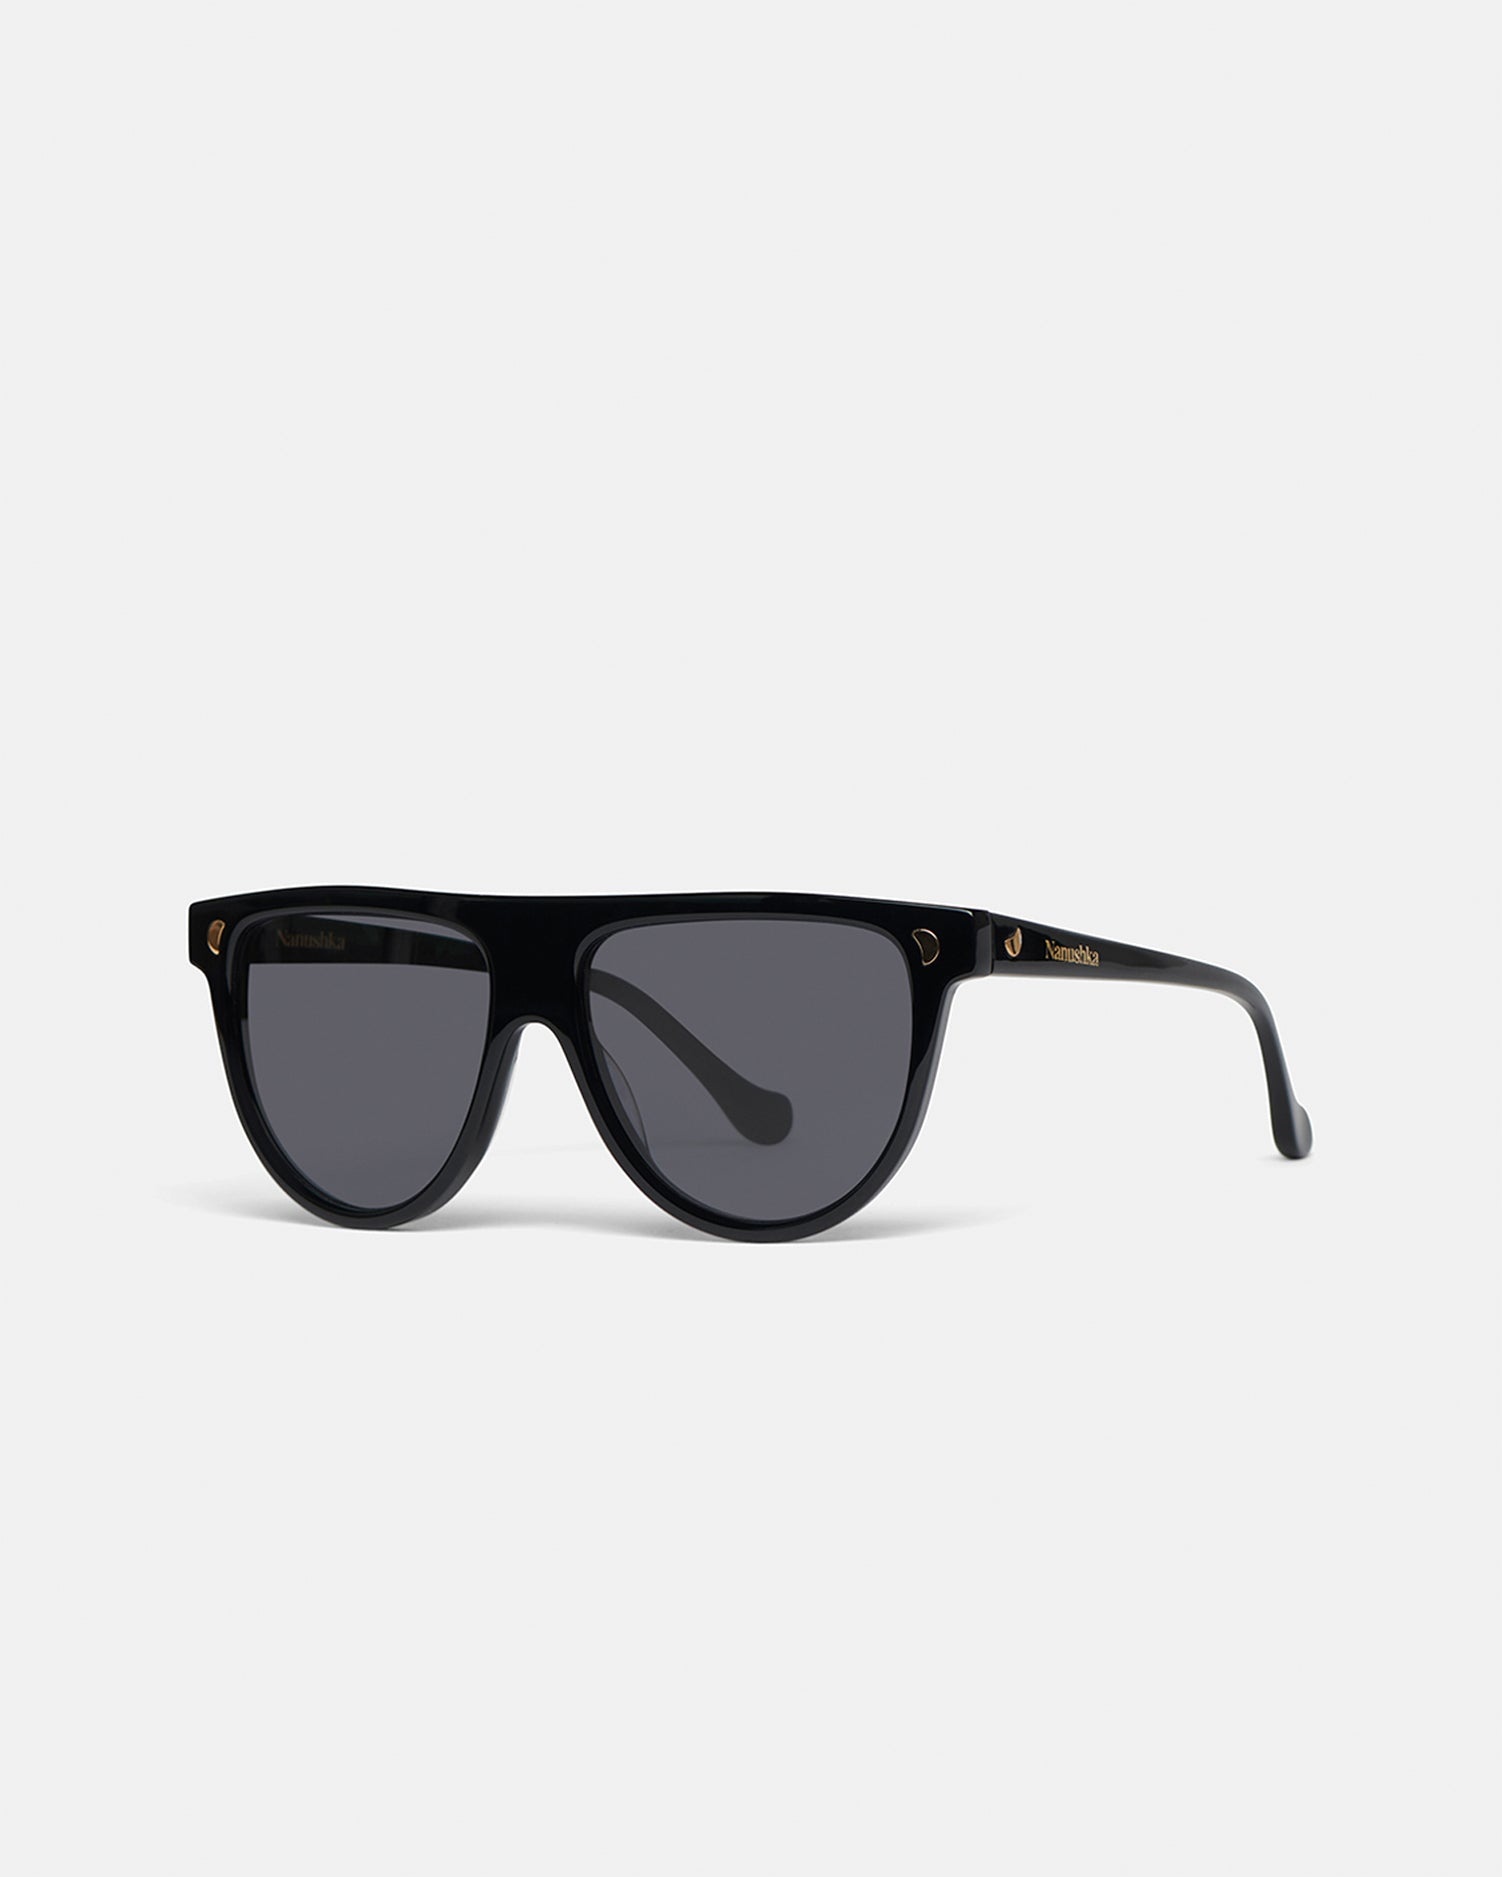 Bio-Plastic Sunglasses - 2